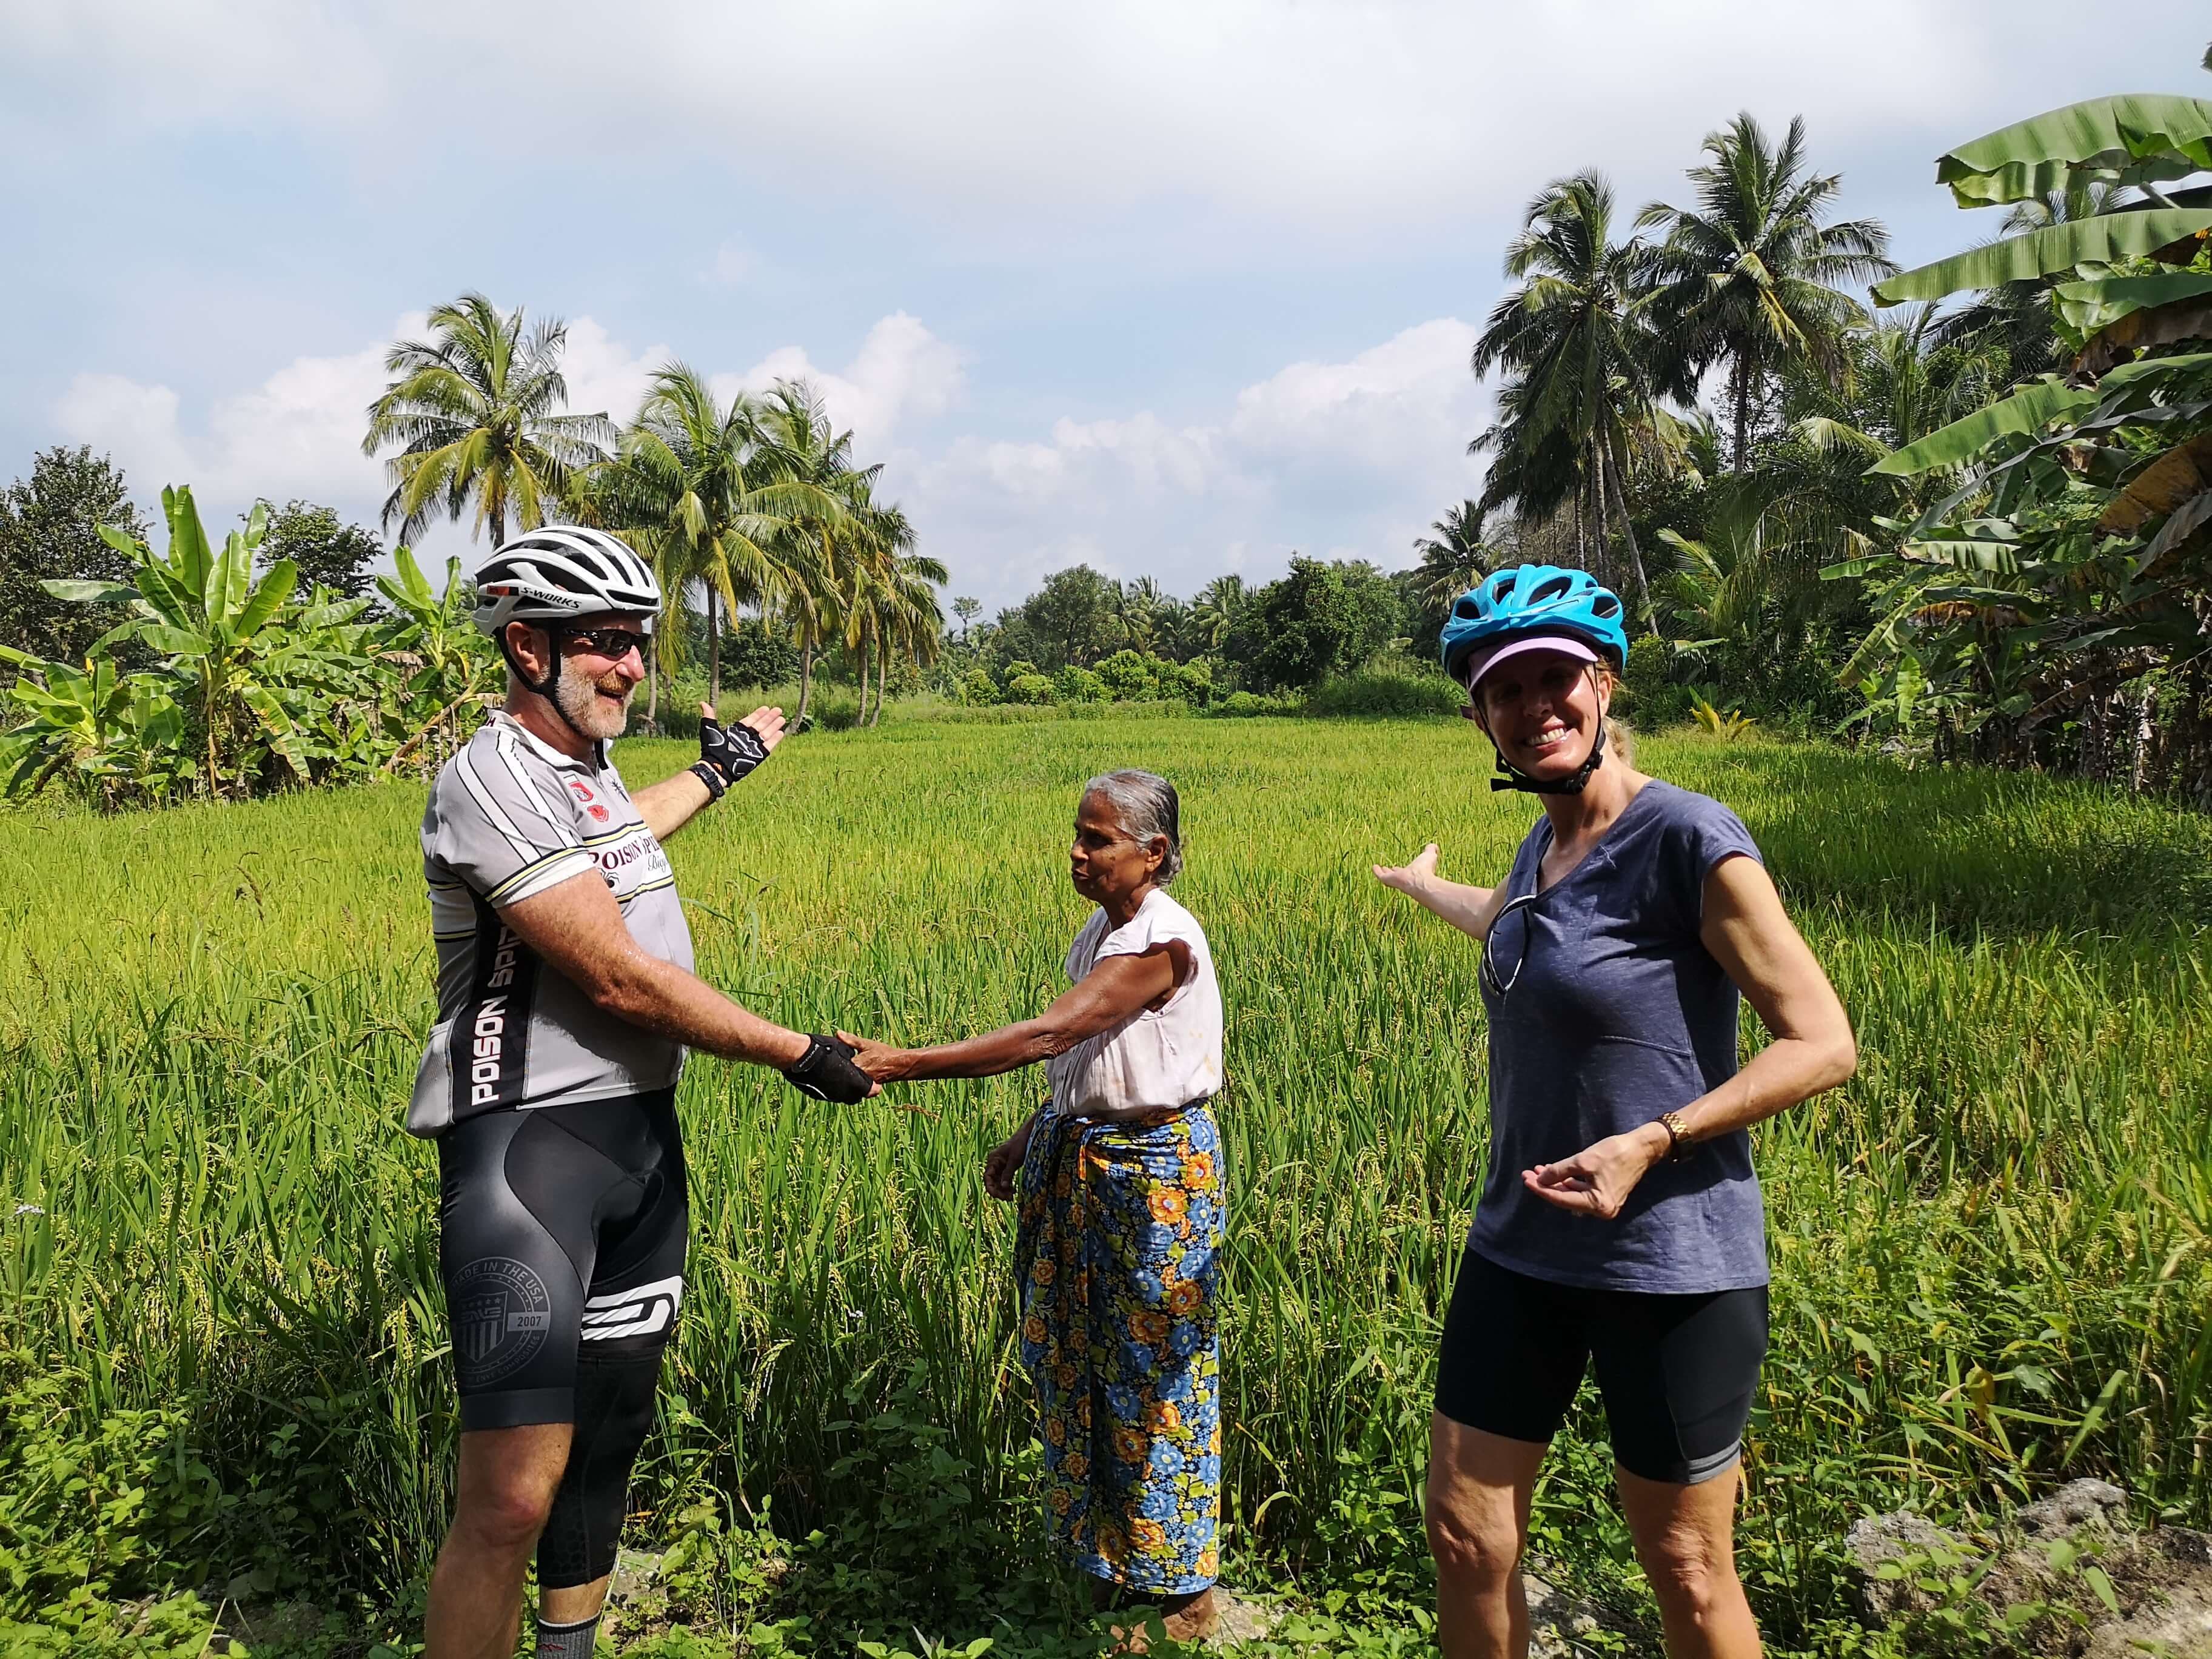 Los turistas conocen a la población local en la zona de plantaciones de arroz en Sigiriya, Sri Lanka